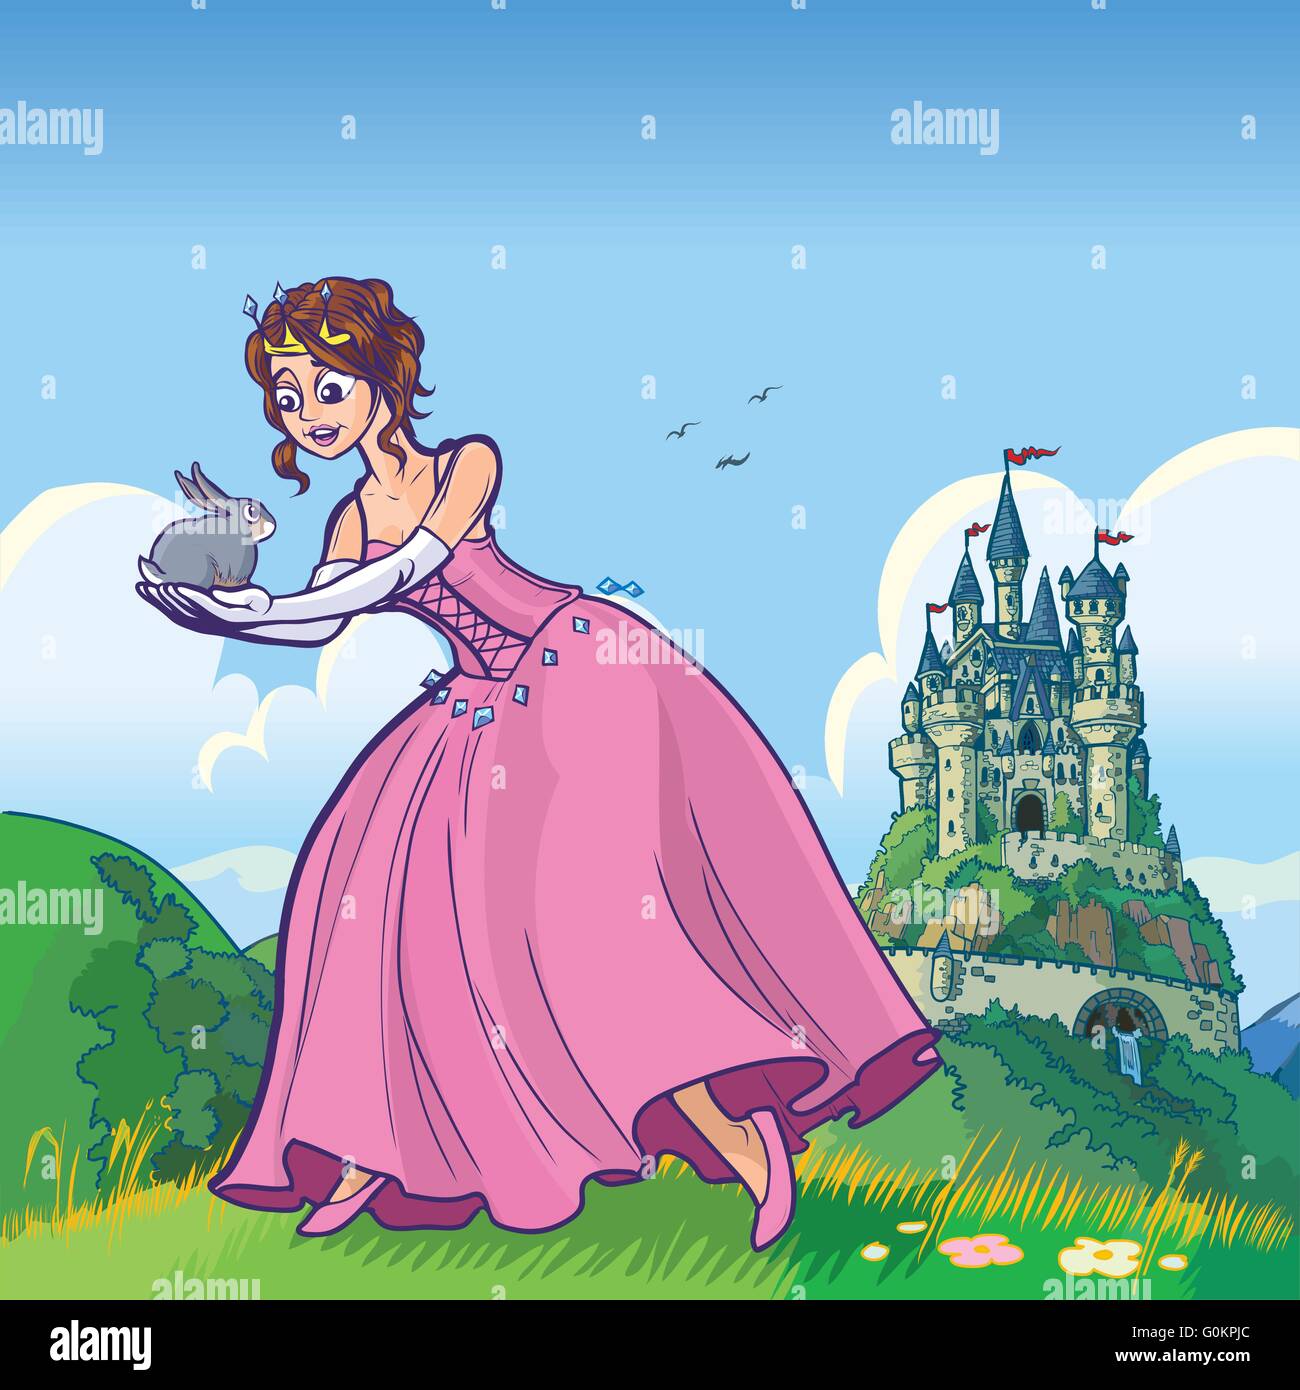 Vektor-Cartoon-Illustration einer Prinzessin hält ein Kaninchen mit einem Fantasie-Schloss im fernen Hintergrund. Stock Vektor